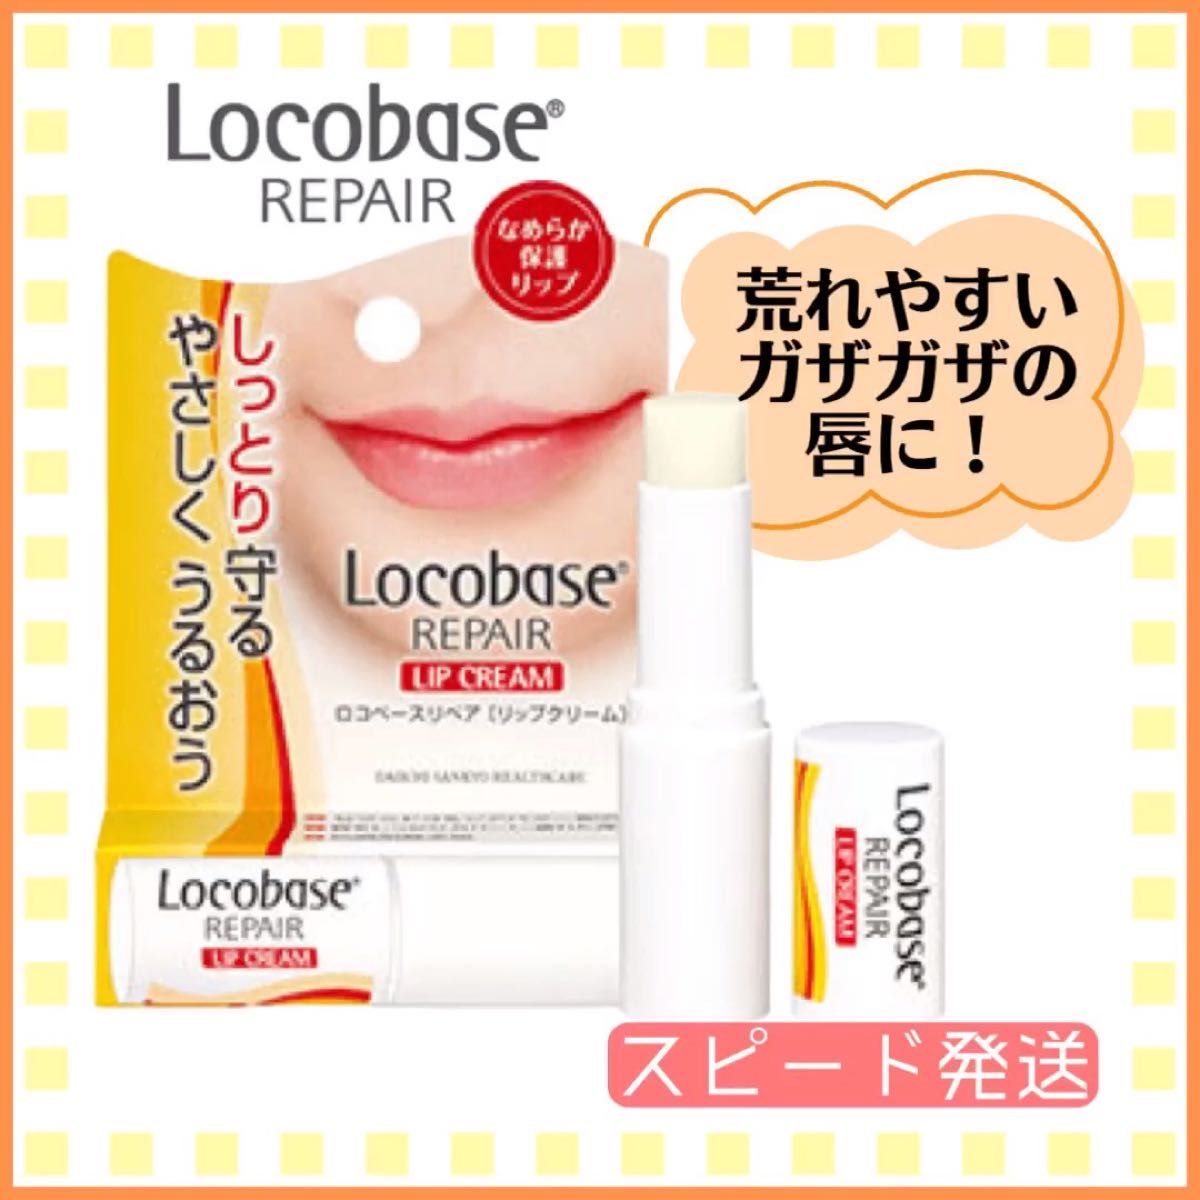 ■ ロコベース リペアリップクリーム 3g 皮膚保護保湿クリーム 防腐剤無添加 敏感肌